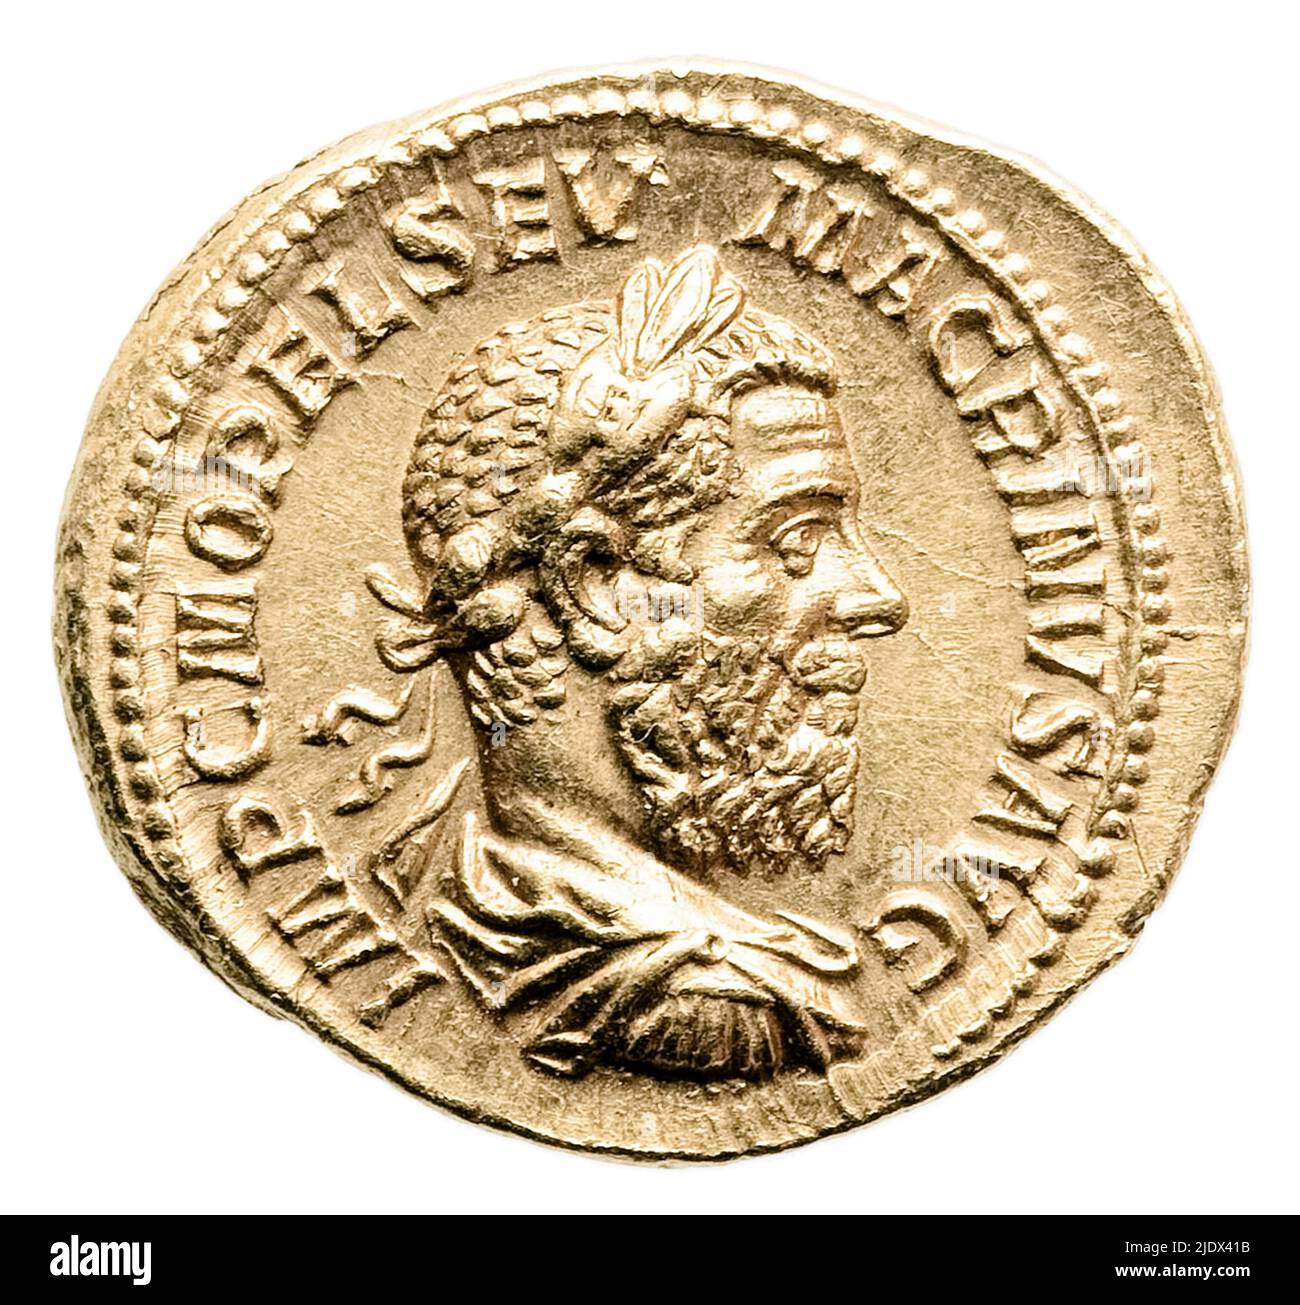 Moneta d'oro romana risalente al 217AD che mostra la testa dell'imperatore romano Marco Opellius Macrinus (165-218). Foto Stock